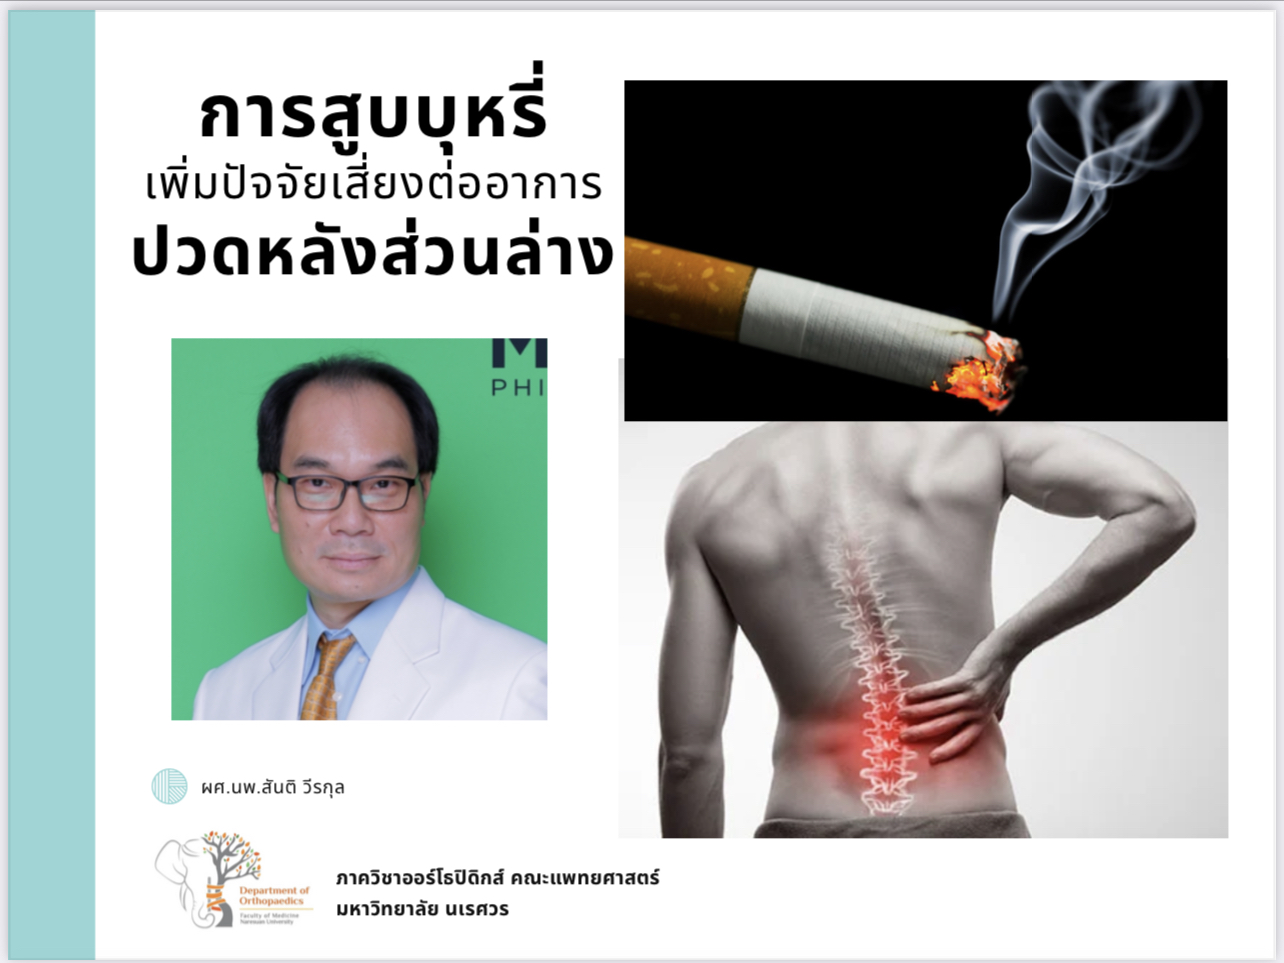 การสูบบุหรี่เพิ่มปัจจัยเสี่ยงต่ออาการปวดหลังส่วนล่าง